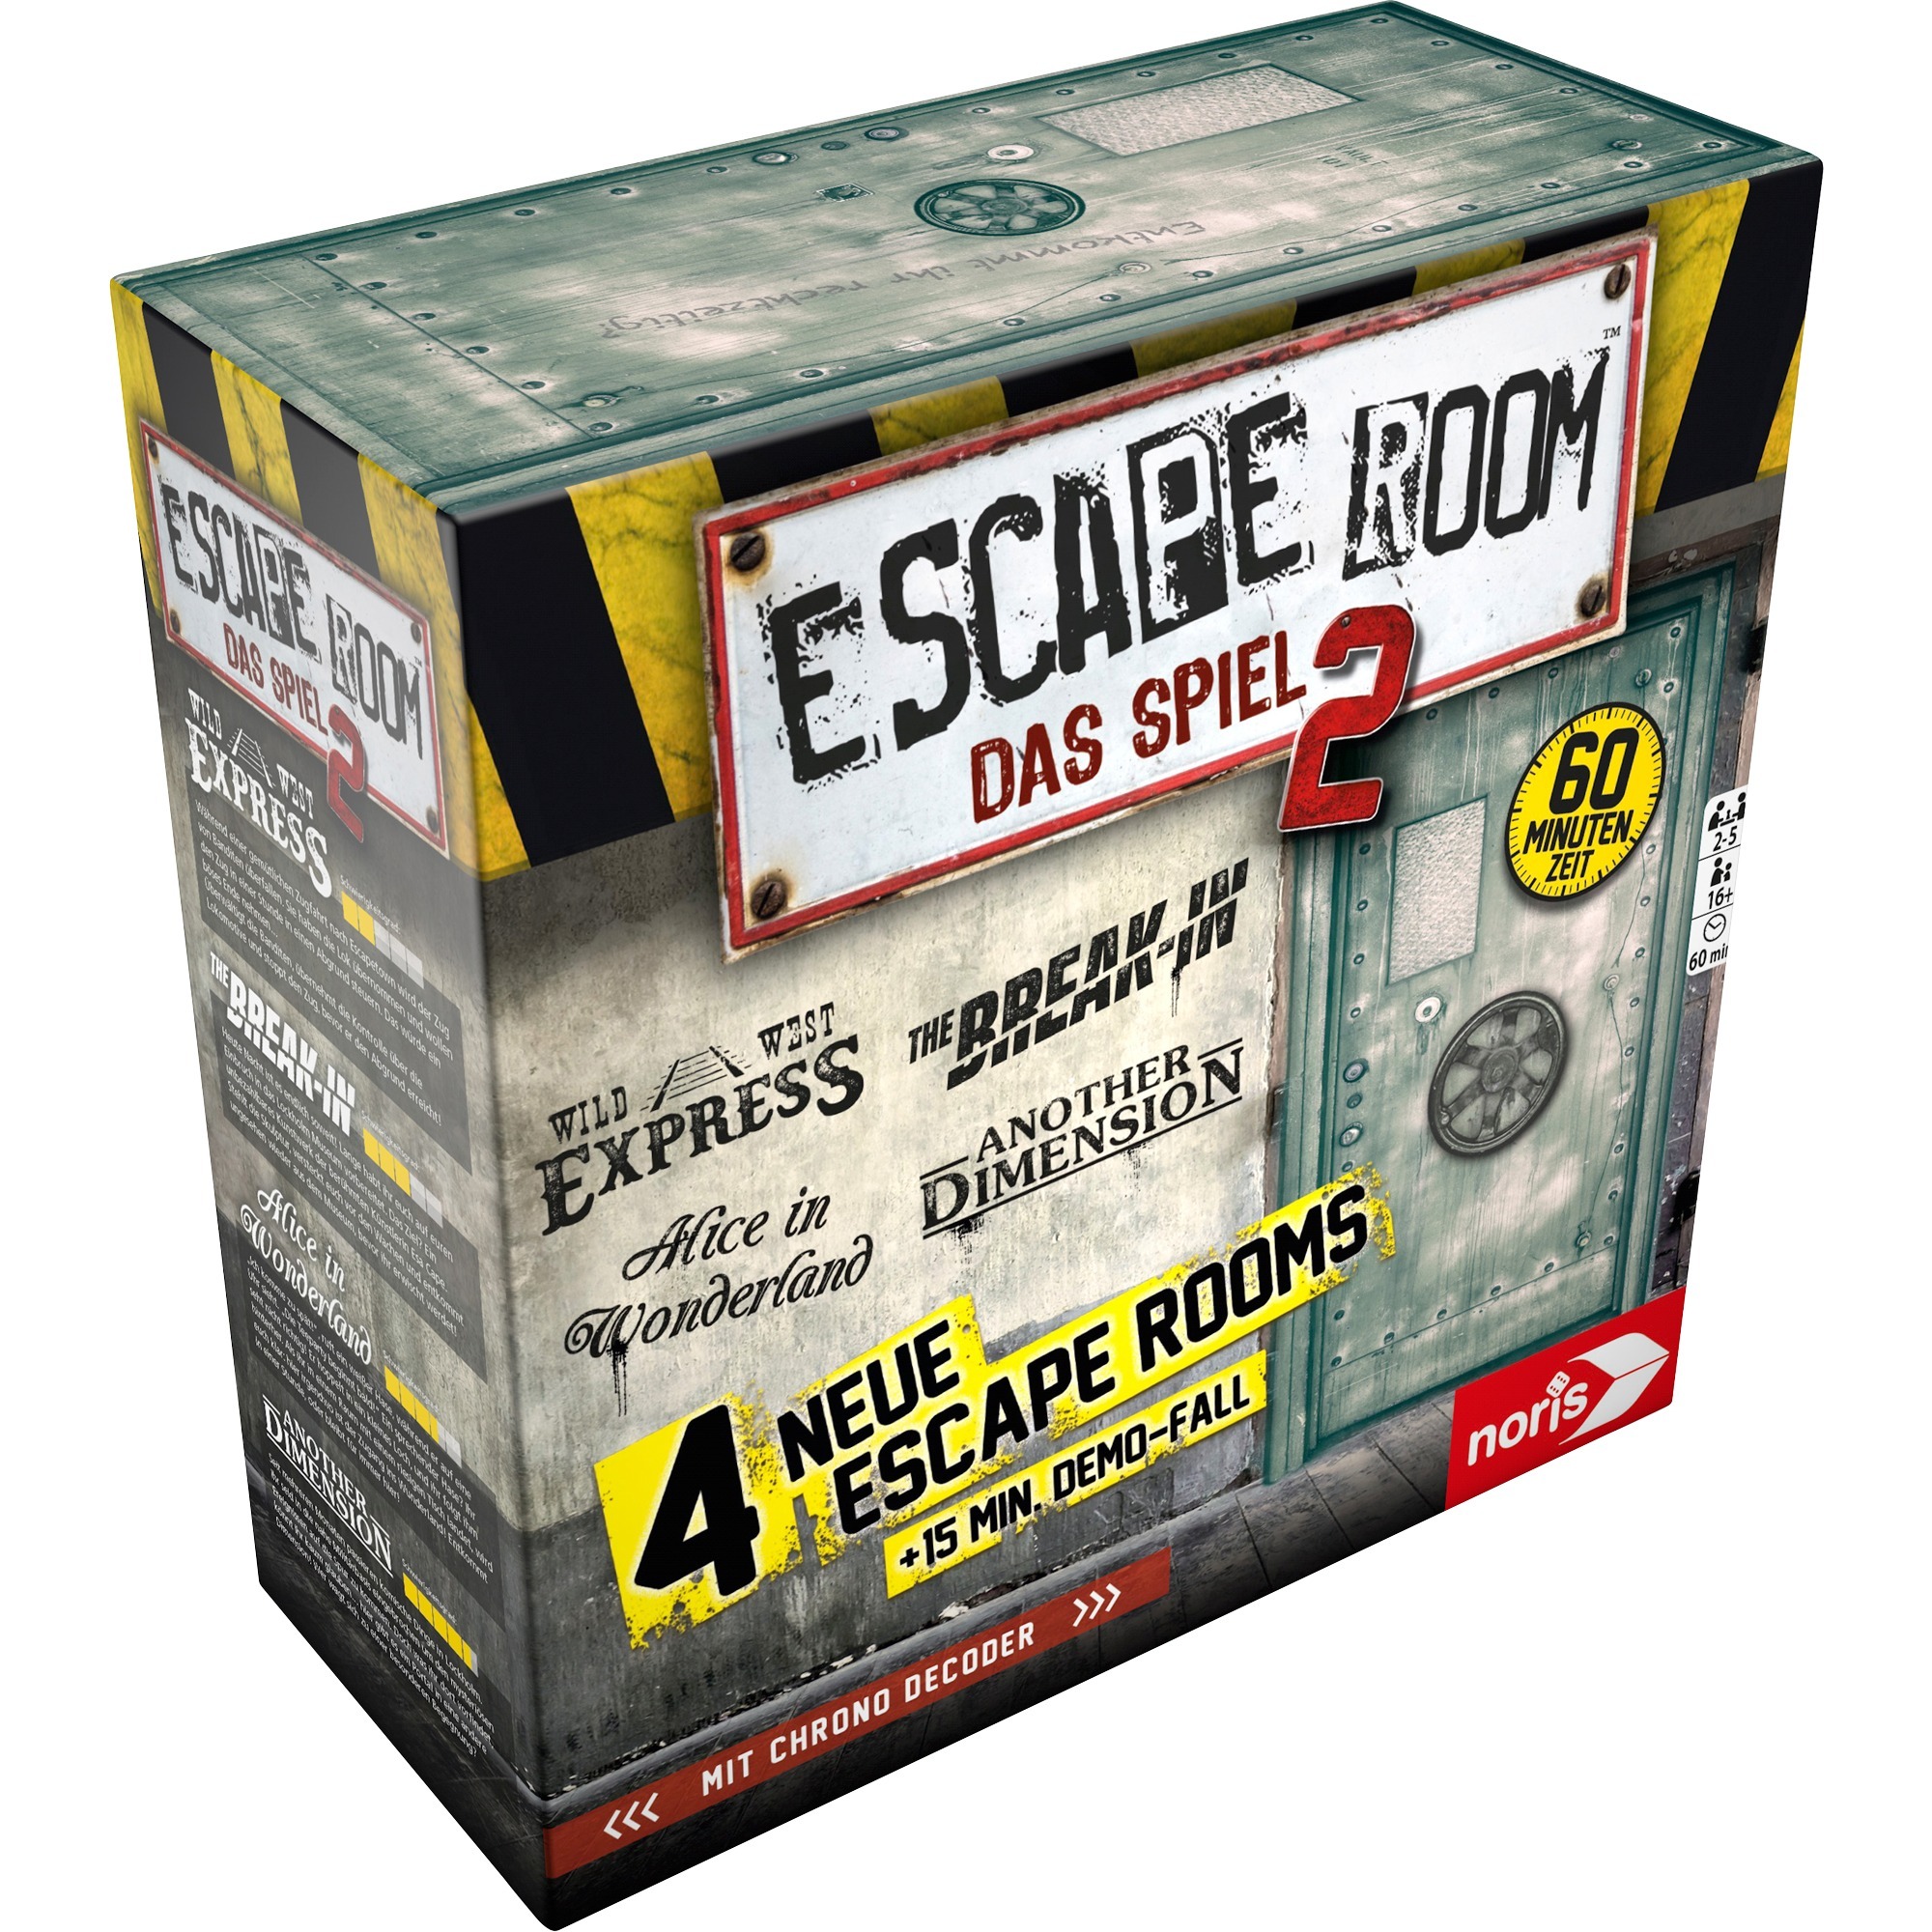 Image of Alternate - Escape Room: Das Spiel 2, Partyspiel online einkaufen bei Alternate